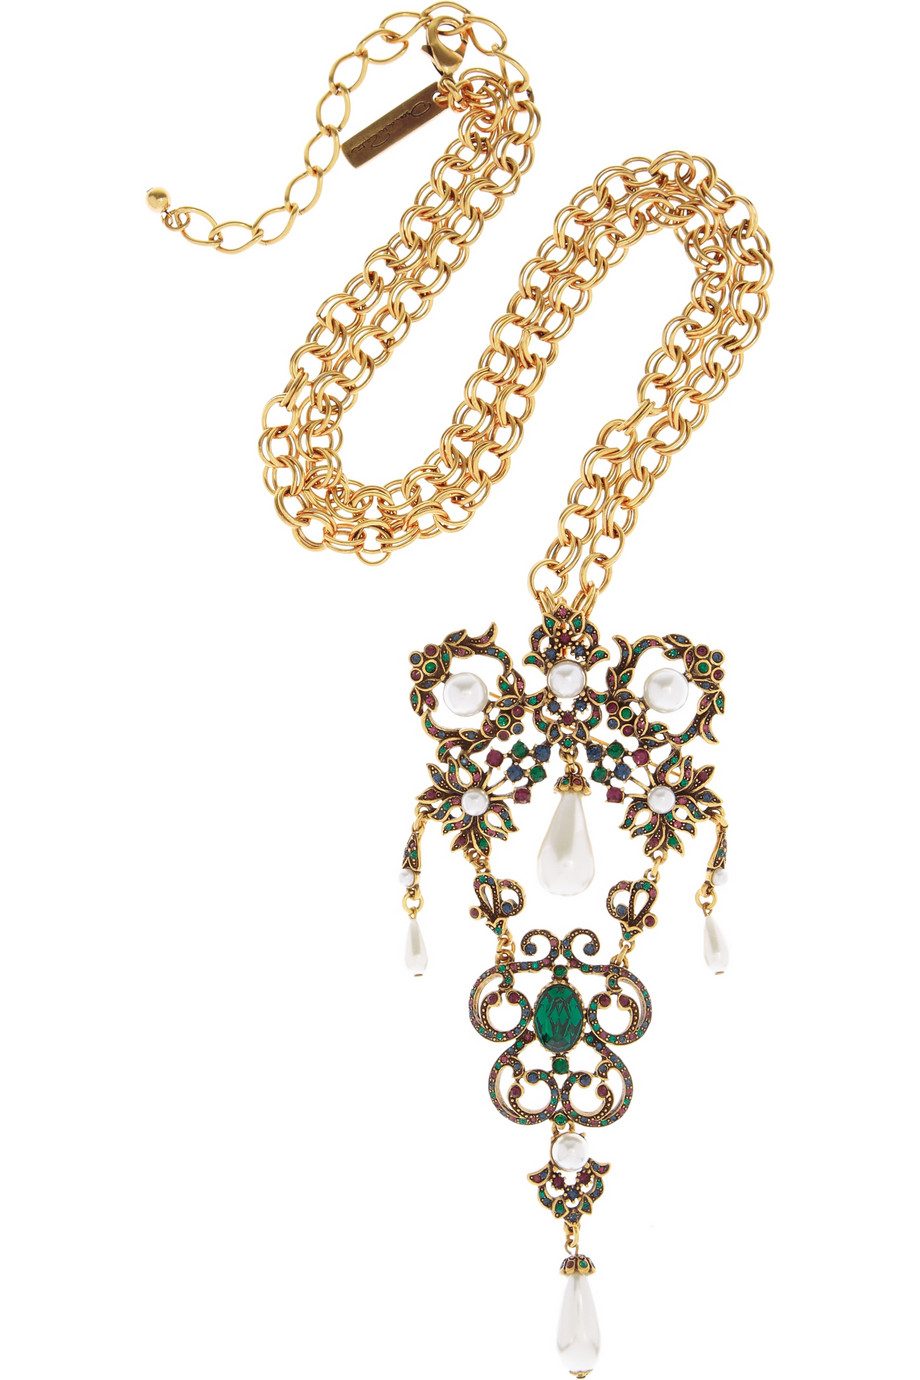 Gold-plated crystal necklace by Oscar de la Renta